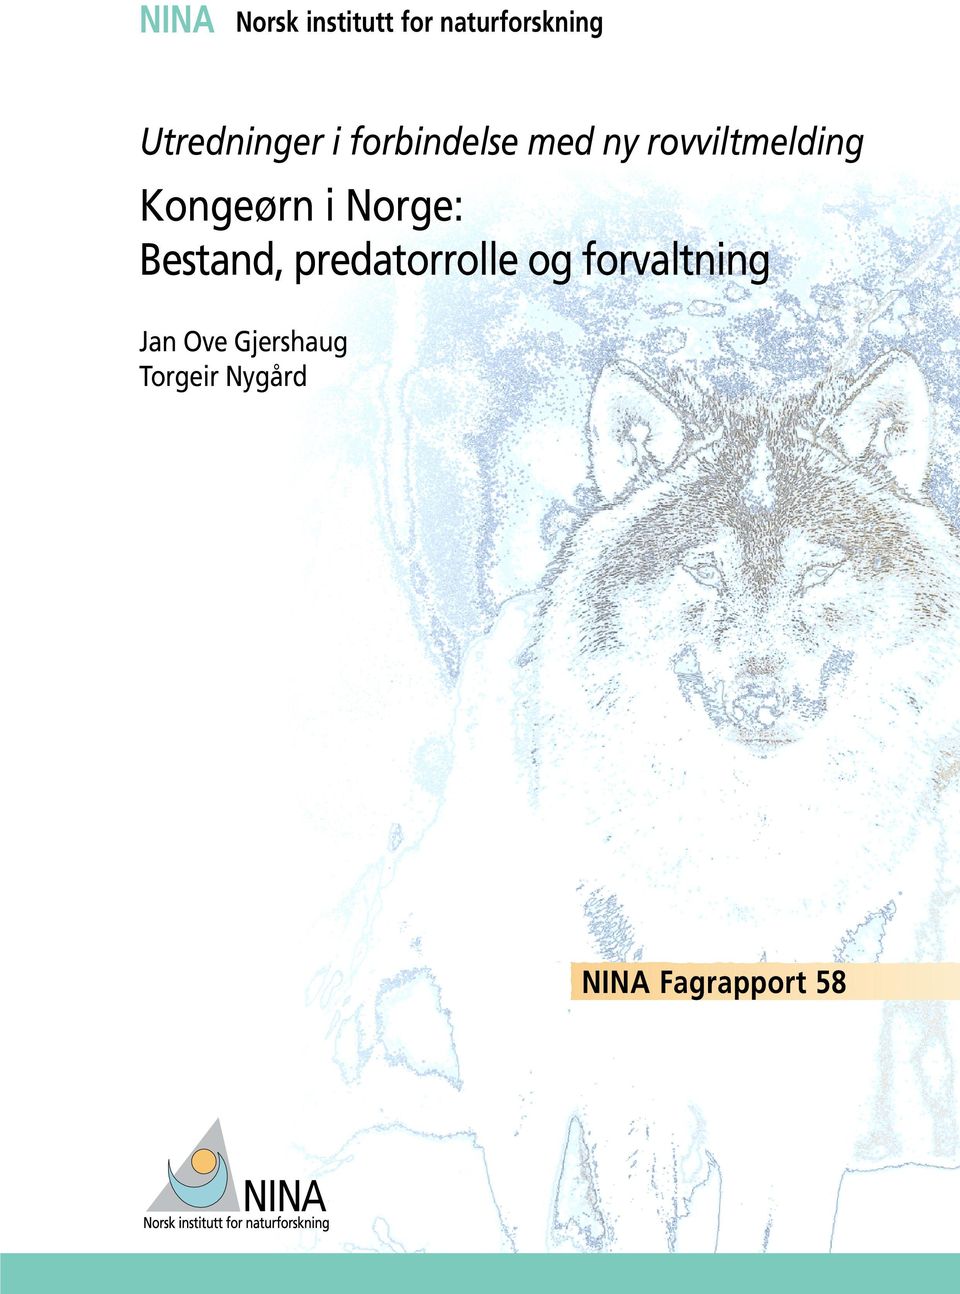 Kongeørn i Norge: Bestand, predatorrolle og